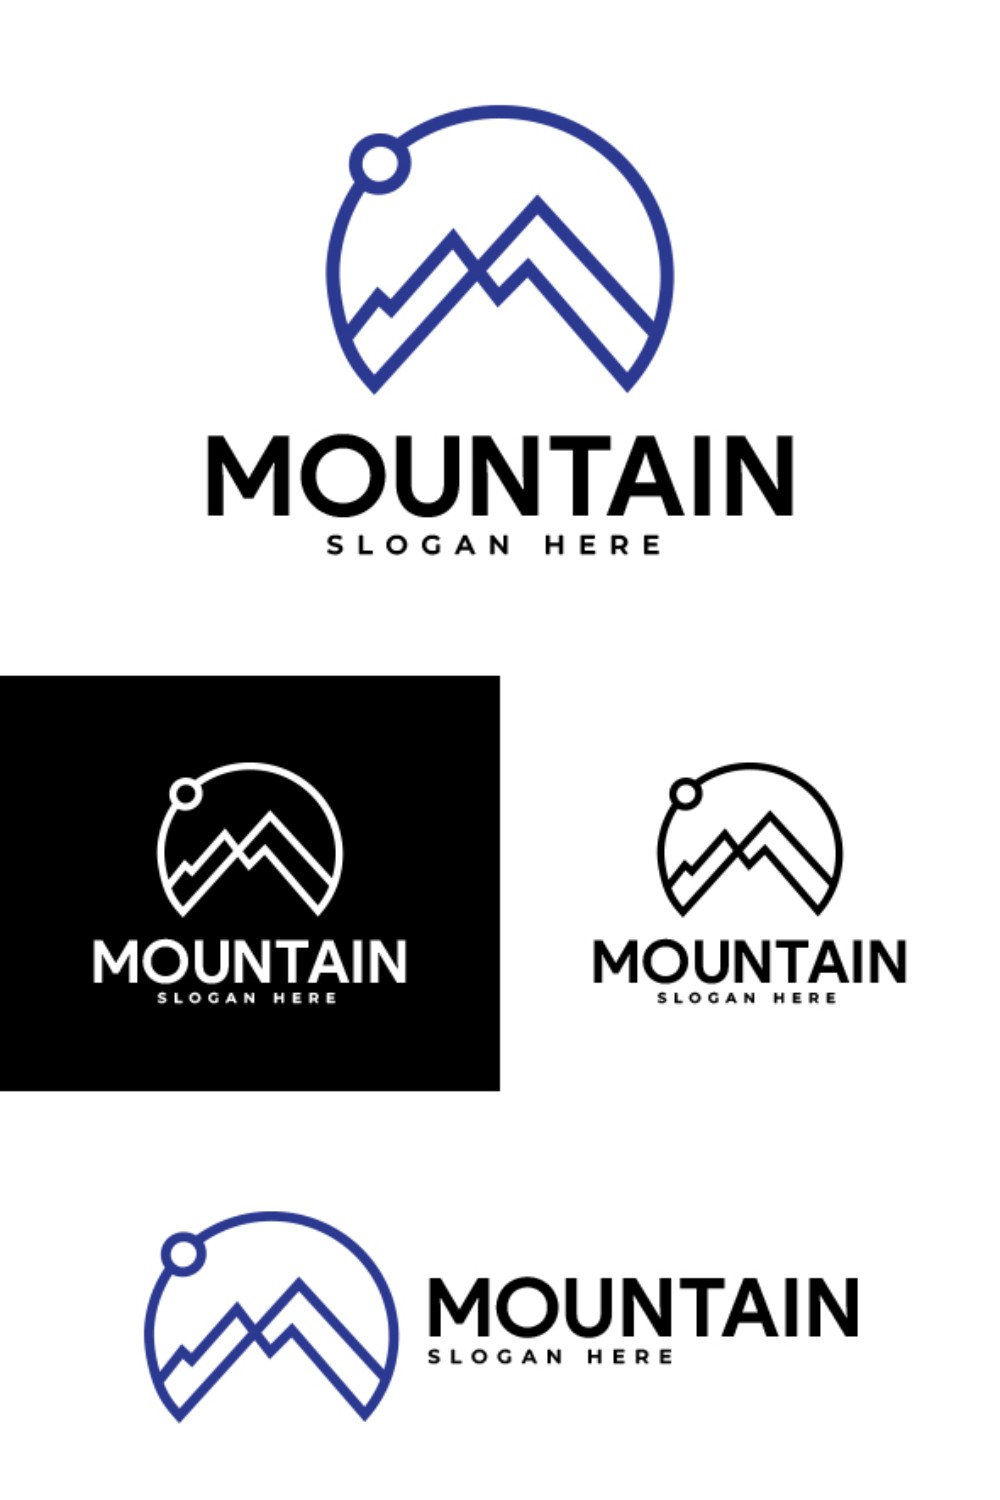 Mountain Line Art Vector Illustration Logo Design pinterest image.